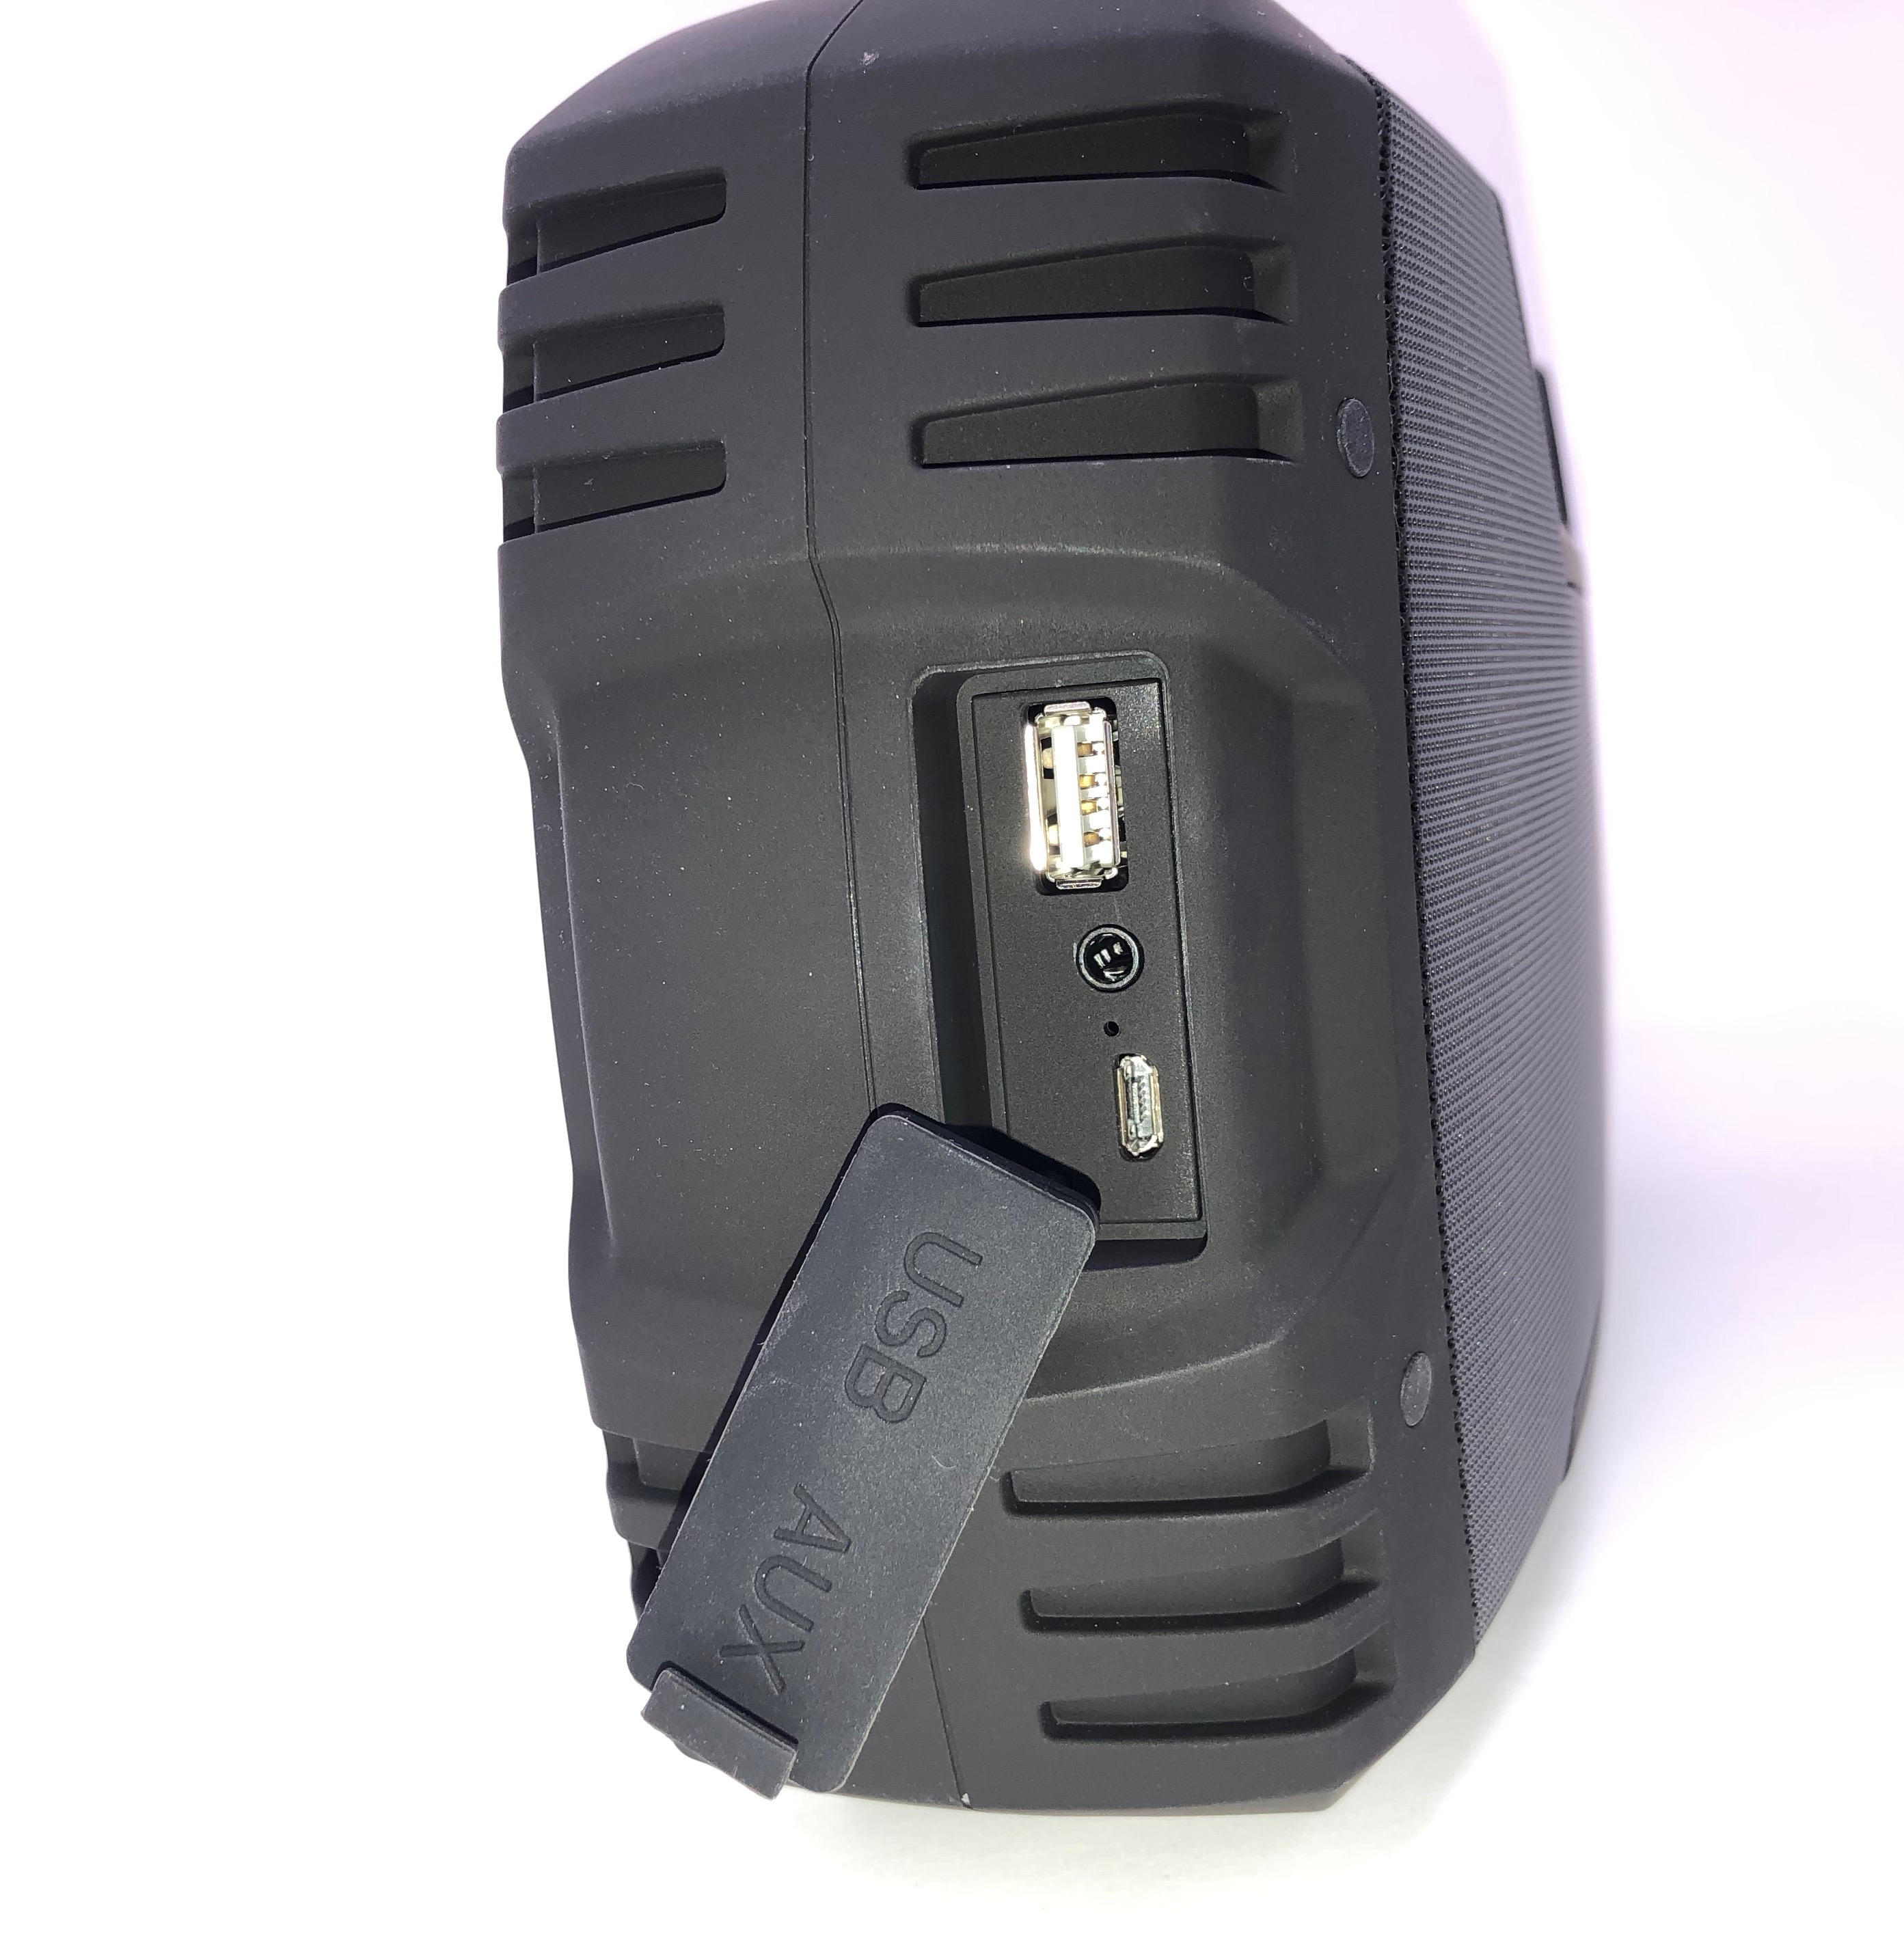 Aomais Go Bluetooth Speaker Review The Gadgeteer